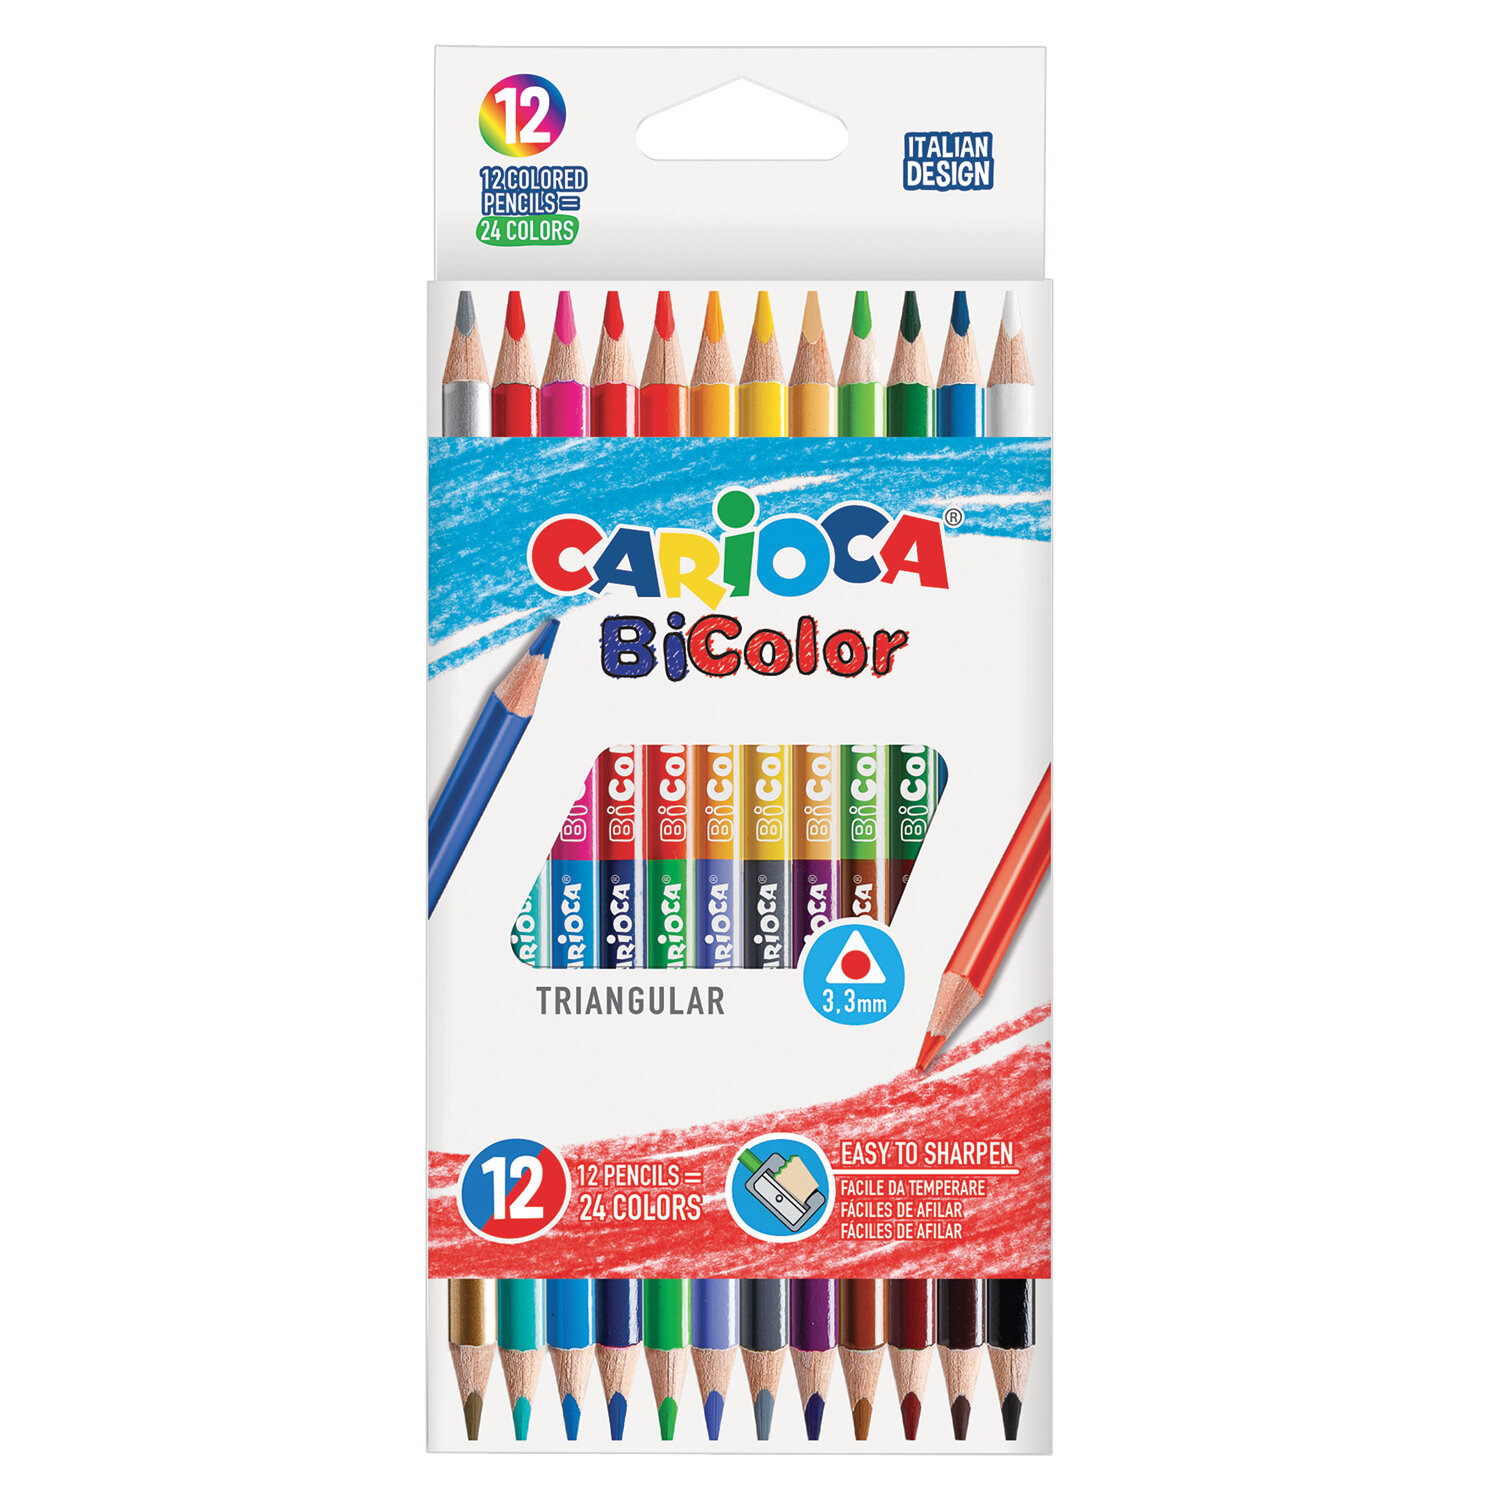 Карандаши двусторонние Carioca "Bi-color", 12 штук, 24 цвета, трехгранные, заточенные (42991), фото